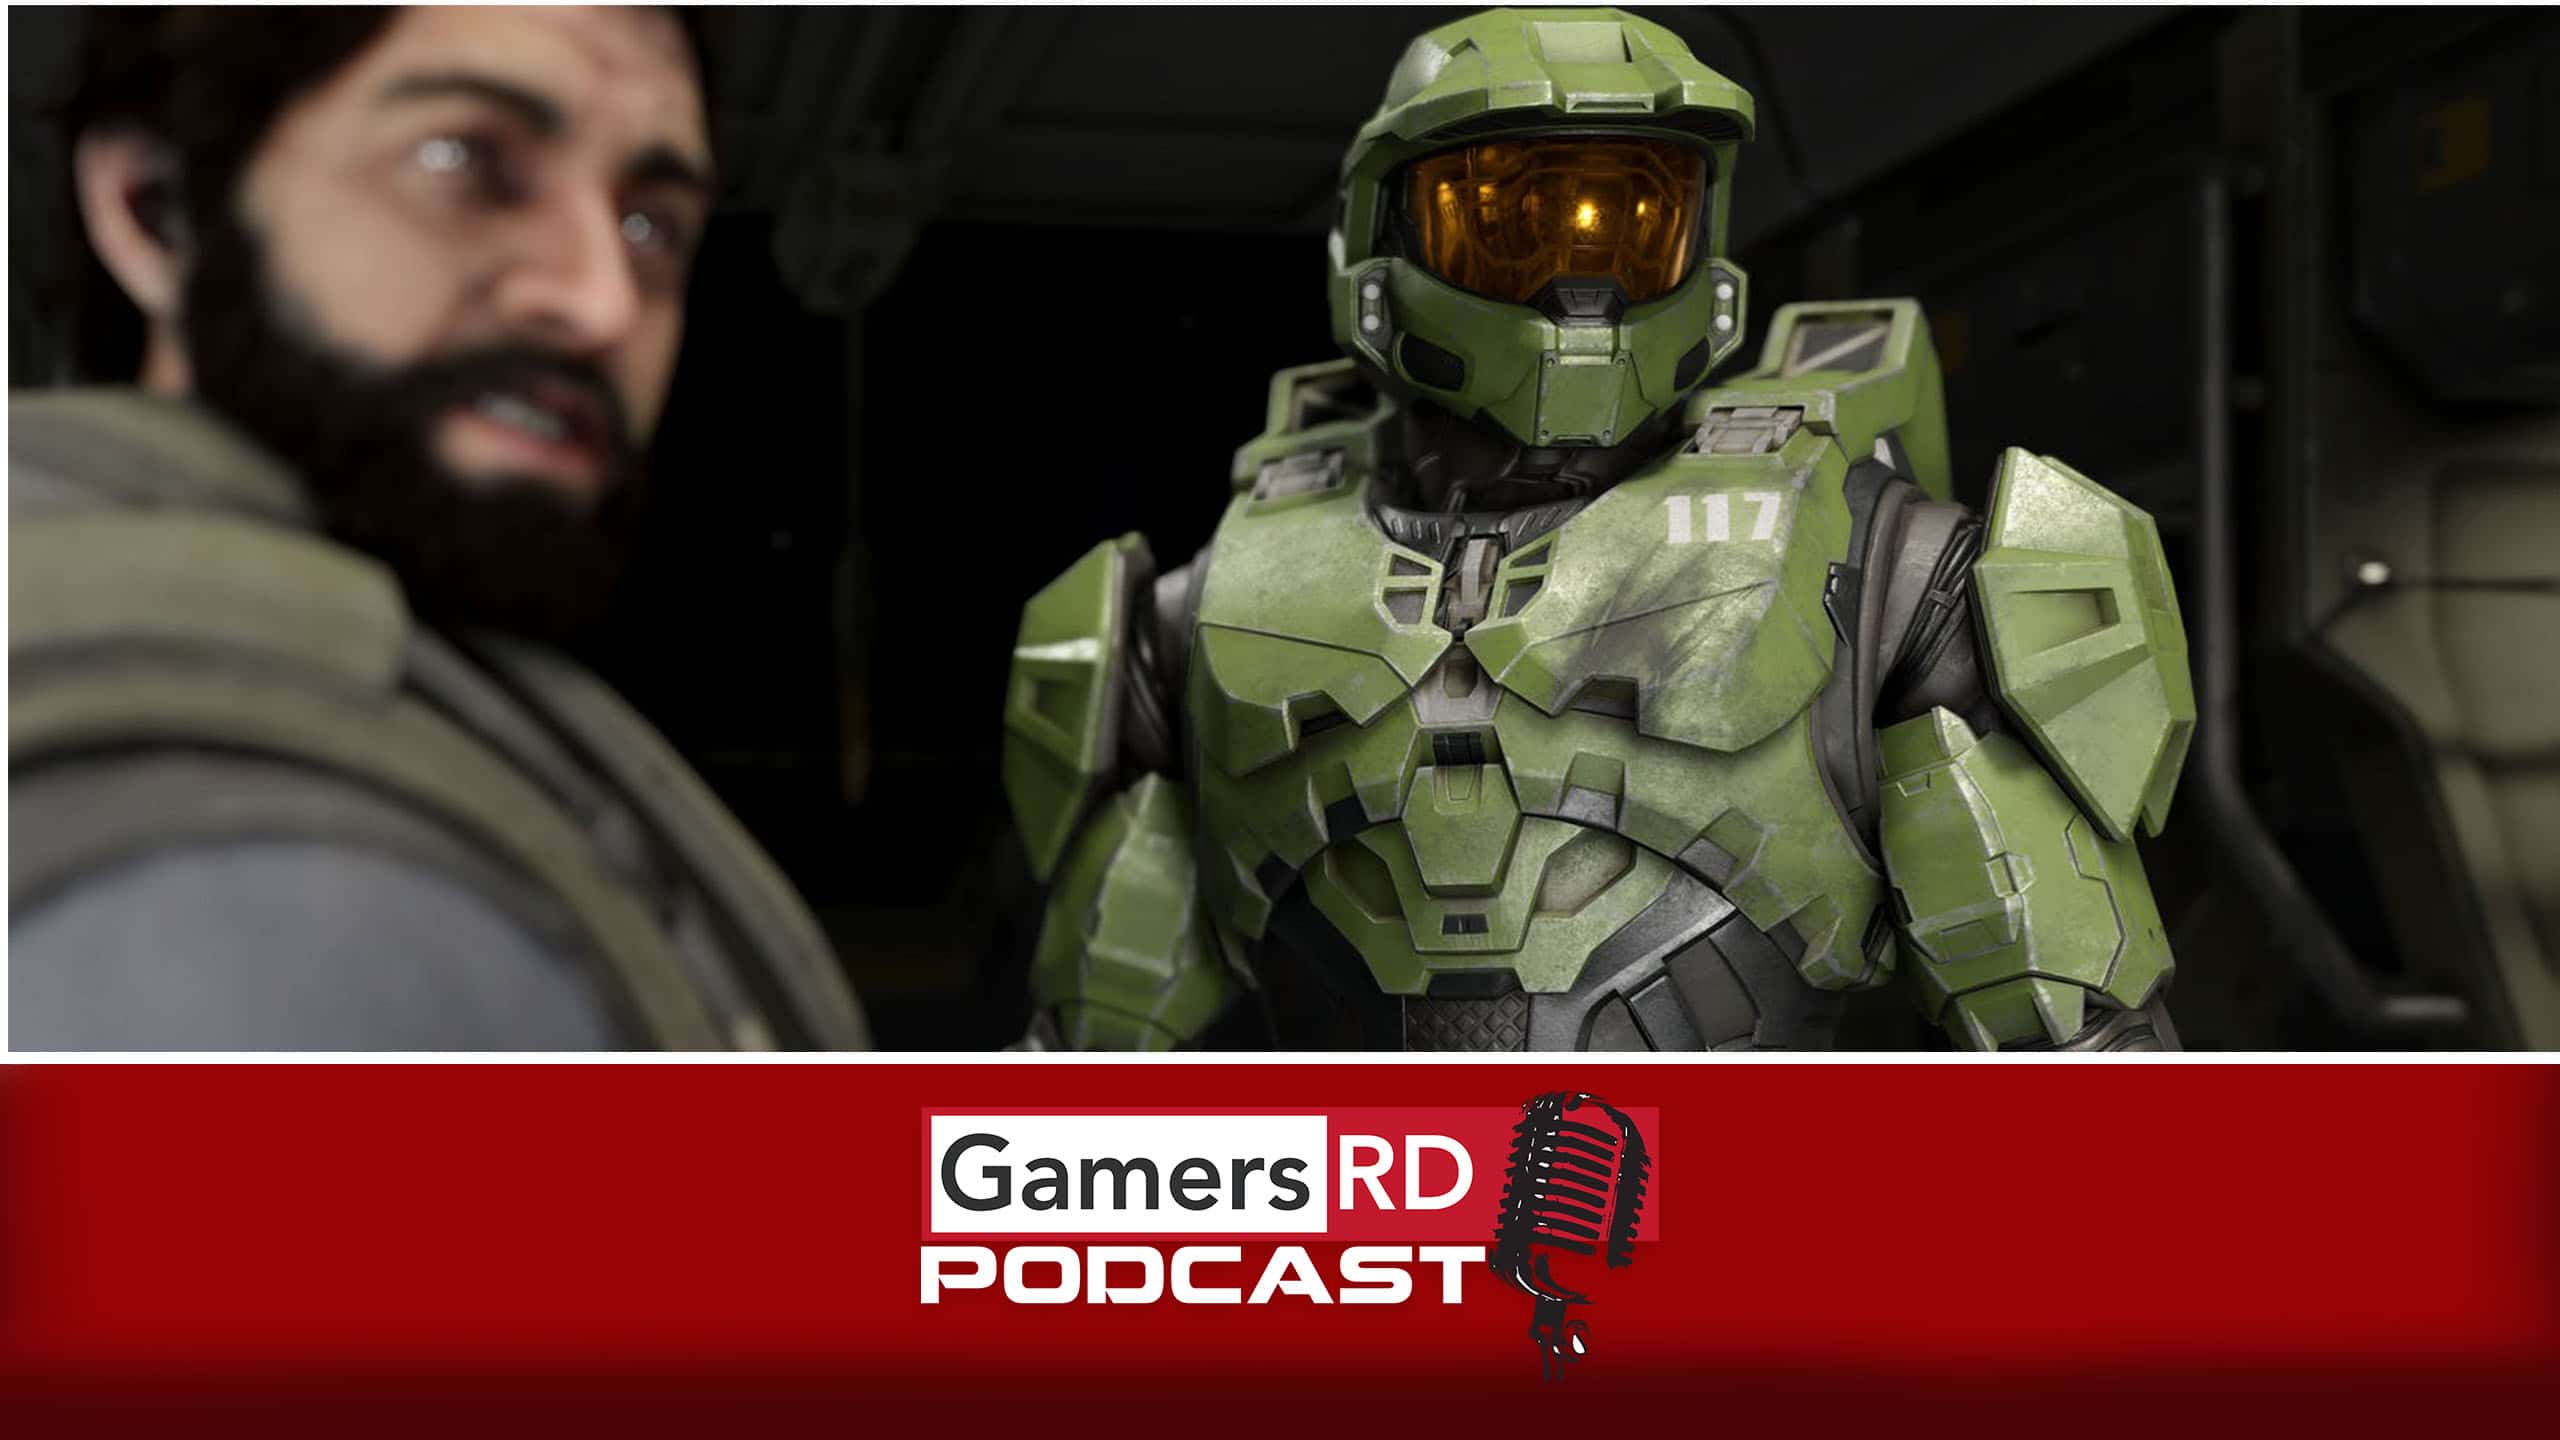 GamersRD Podcast 82 Episodio especial sobre Halo Infinite